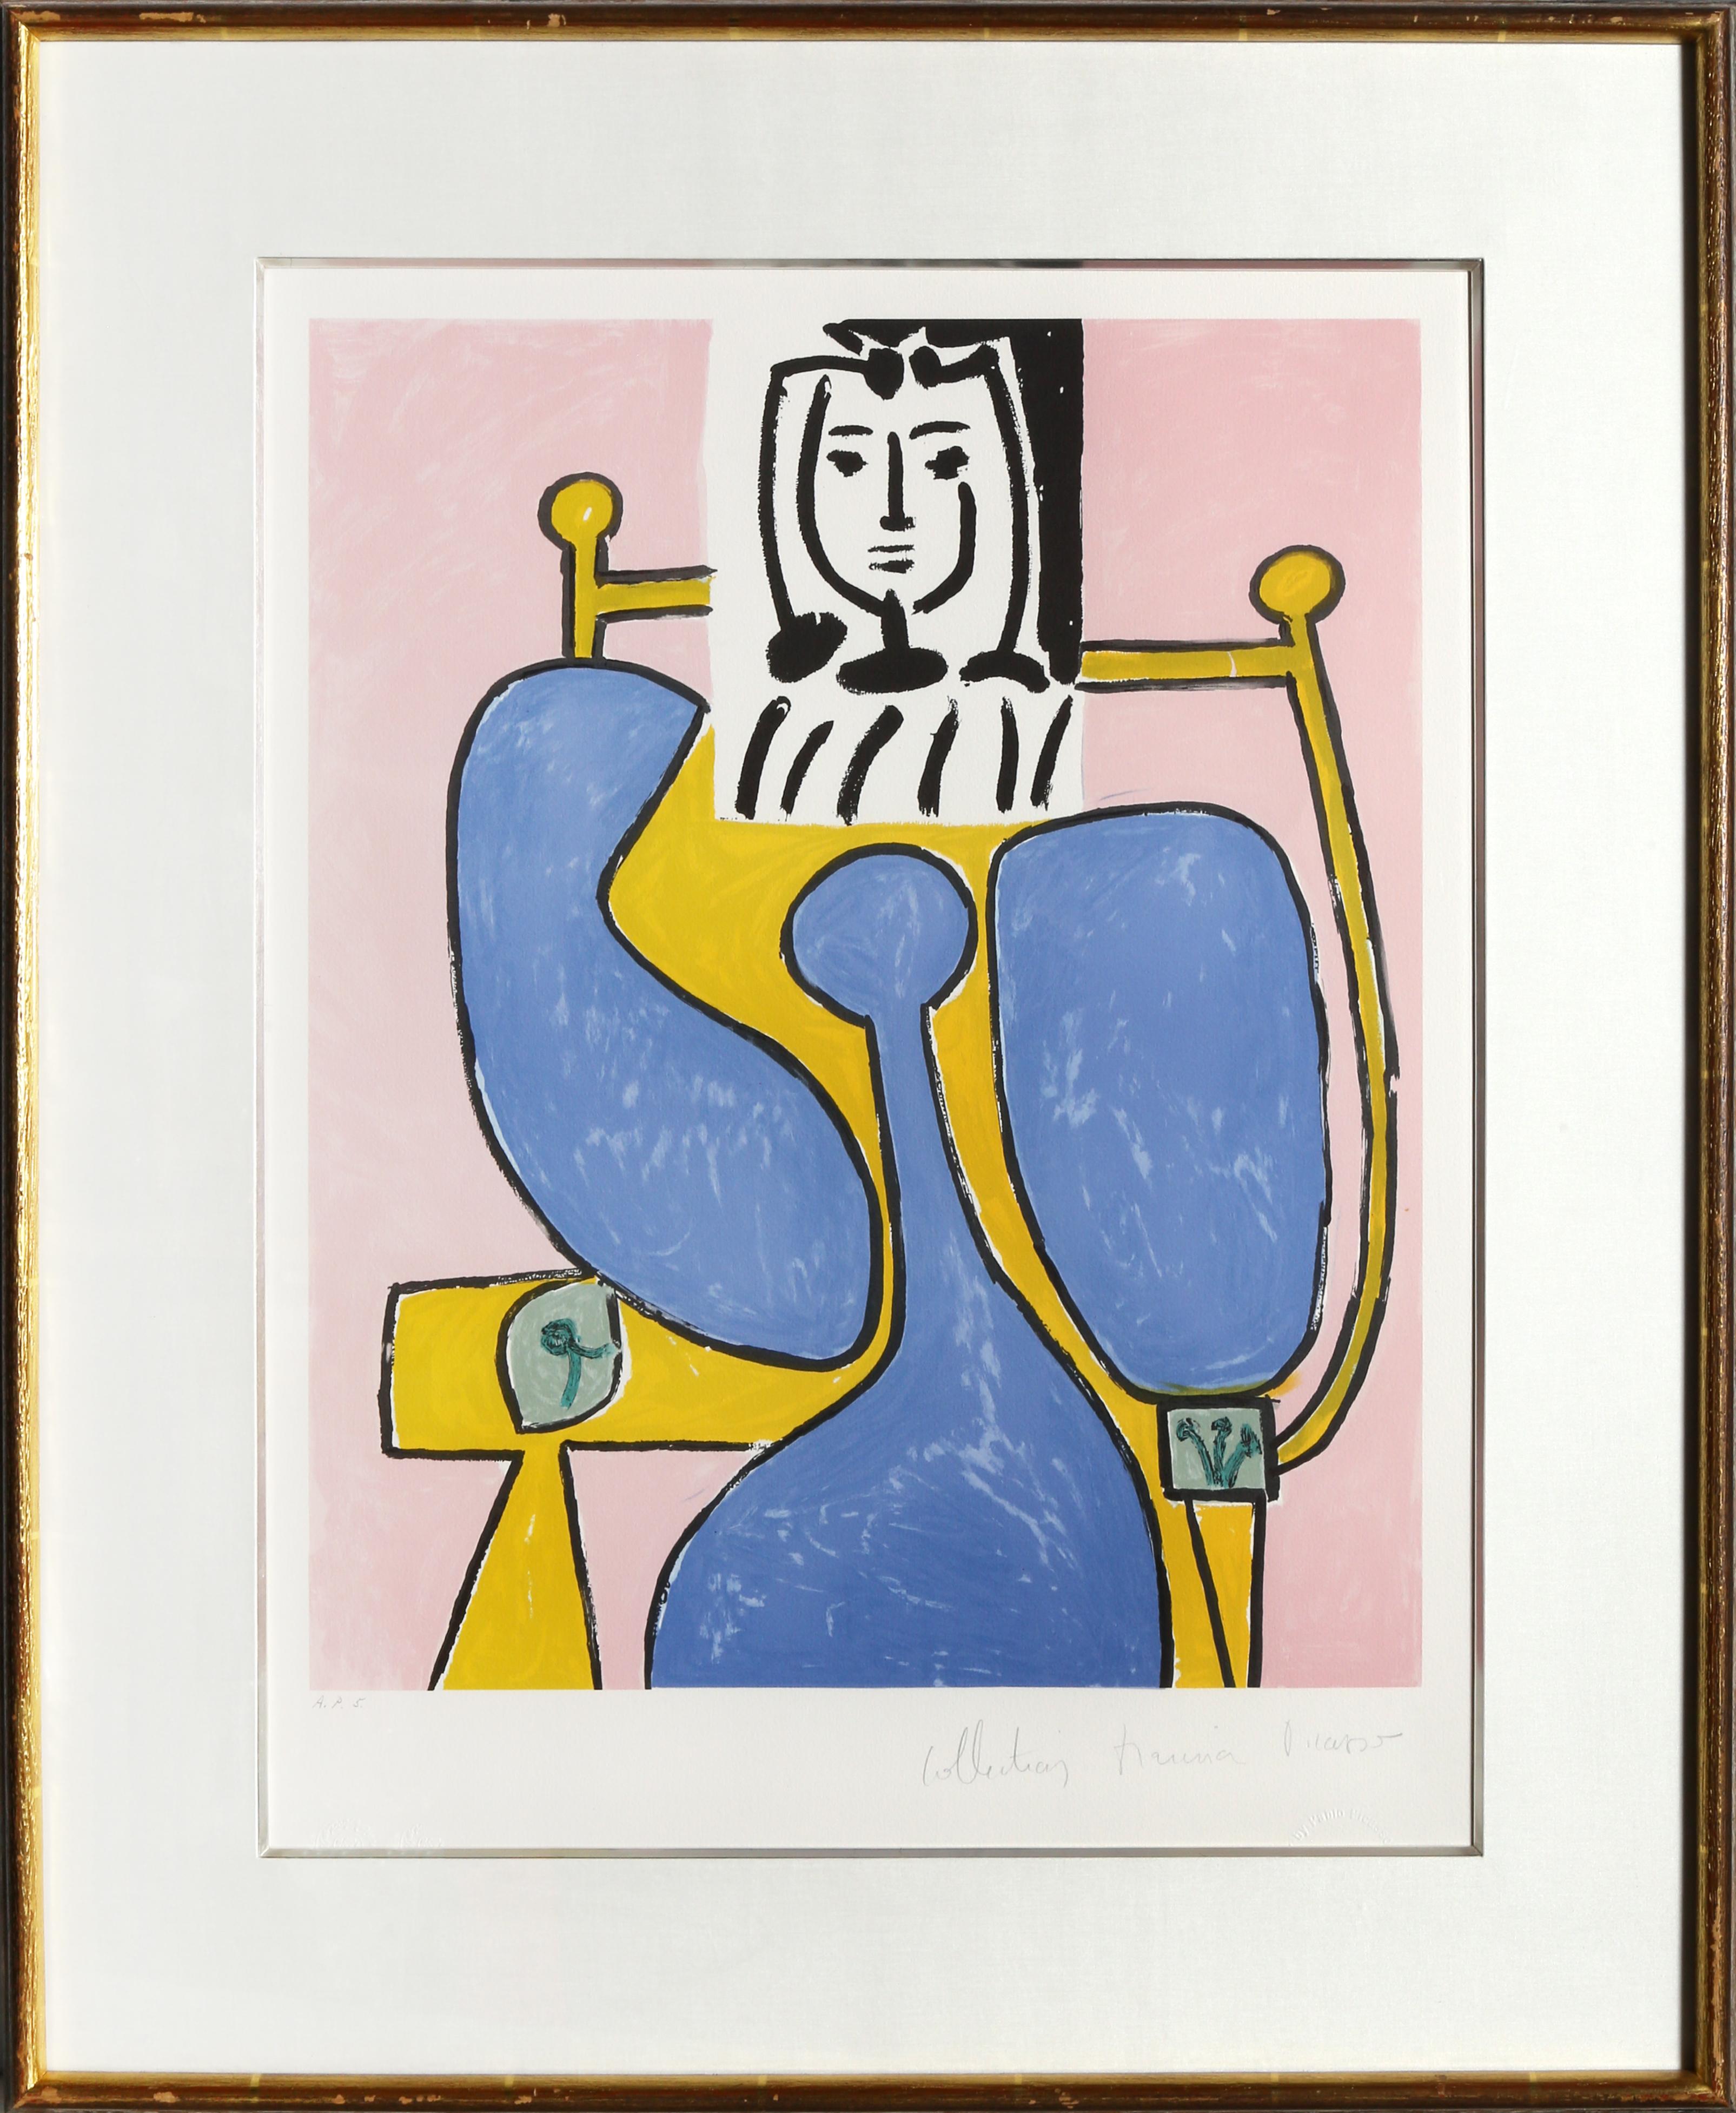 Eine Lithographie aus der Nachlasssammlung Marina Picasso nach dem Gemälde "Femme Assise a la Robe Bleue" von Pablo Picasso.  Das Originalgemälde wurde 1949 fertiggestellt. In den 1970er Jahren, nach Picassos Tod, autorisierte Marina Picasso, seine